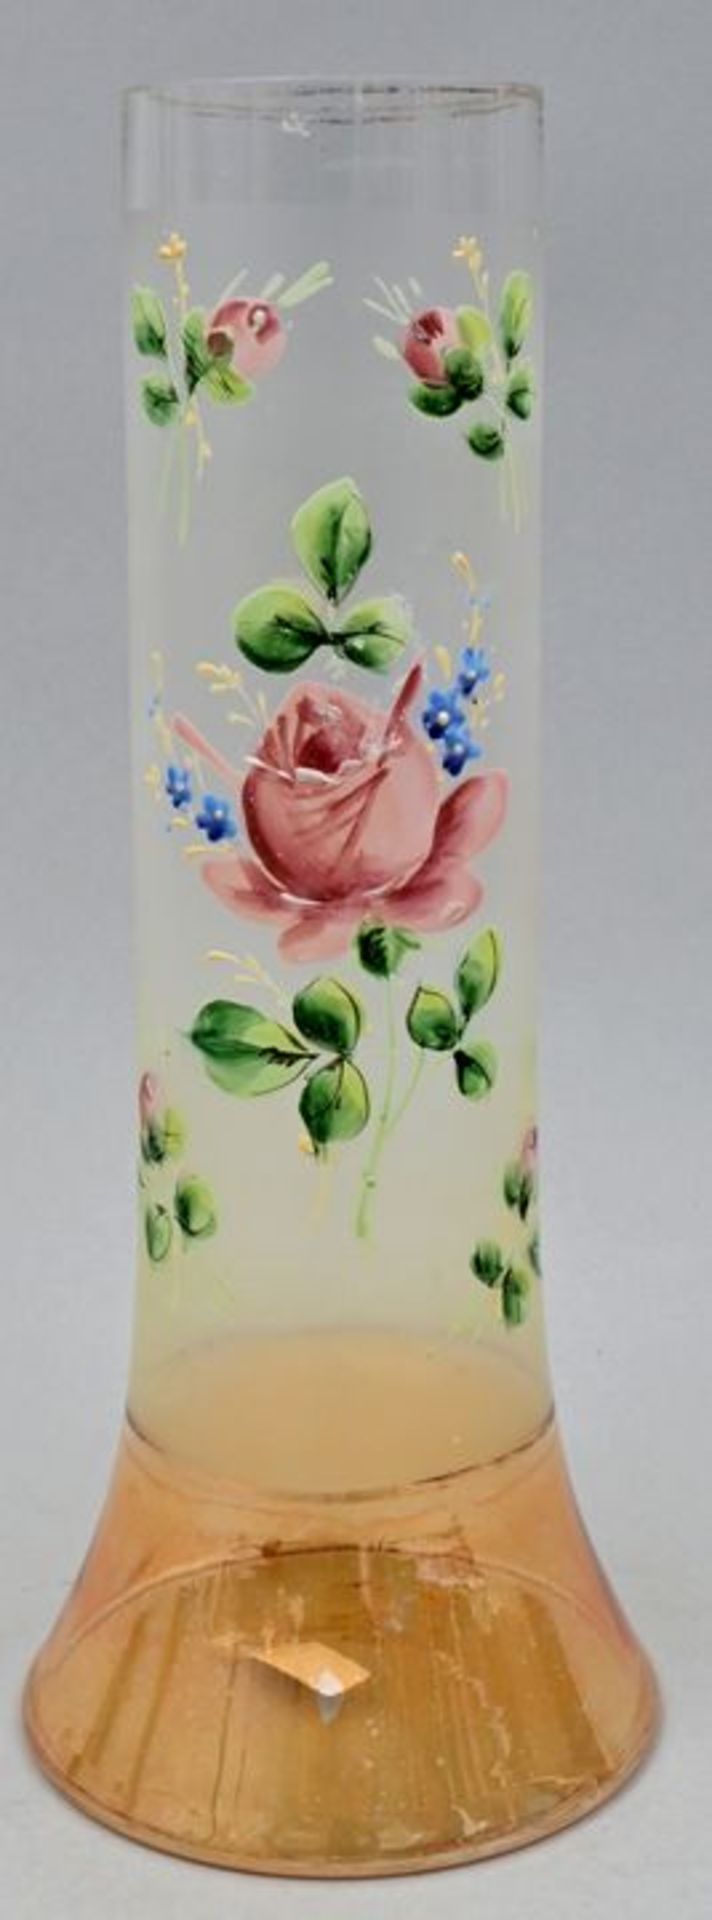 Vase "Rosen" / Vase